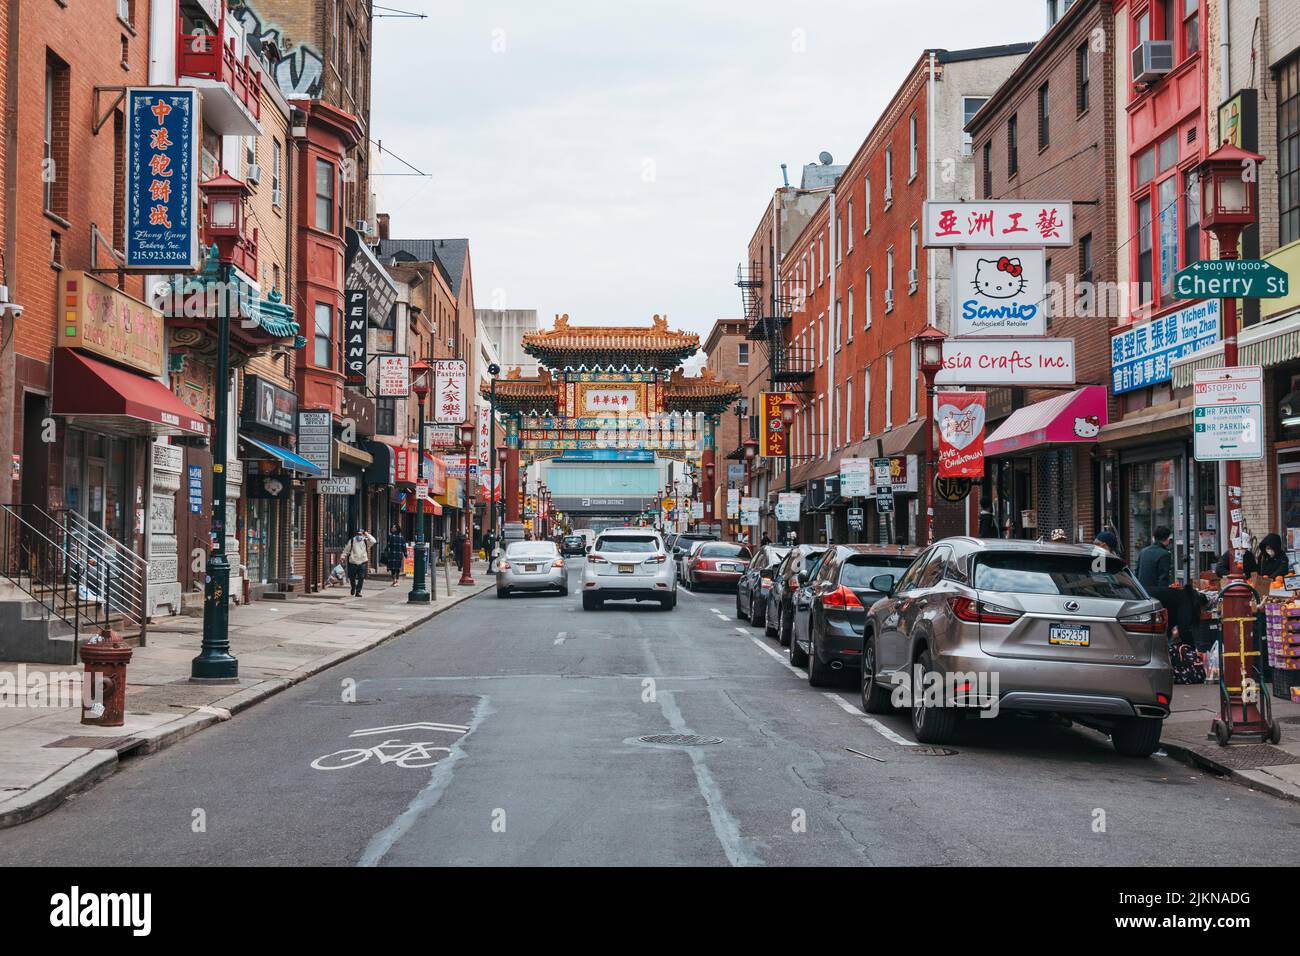 Vue sur une rue remplie de restaurants, de magasins et d'autres entreprises chinoises à Chinatown, Philadelphie, USA Banque D'Images